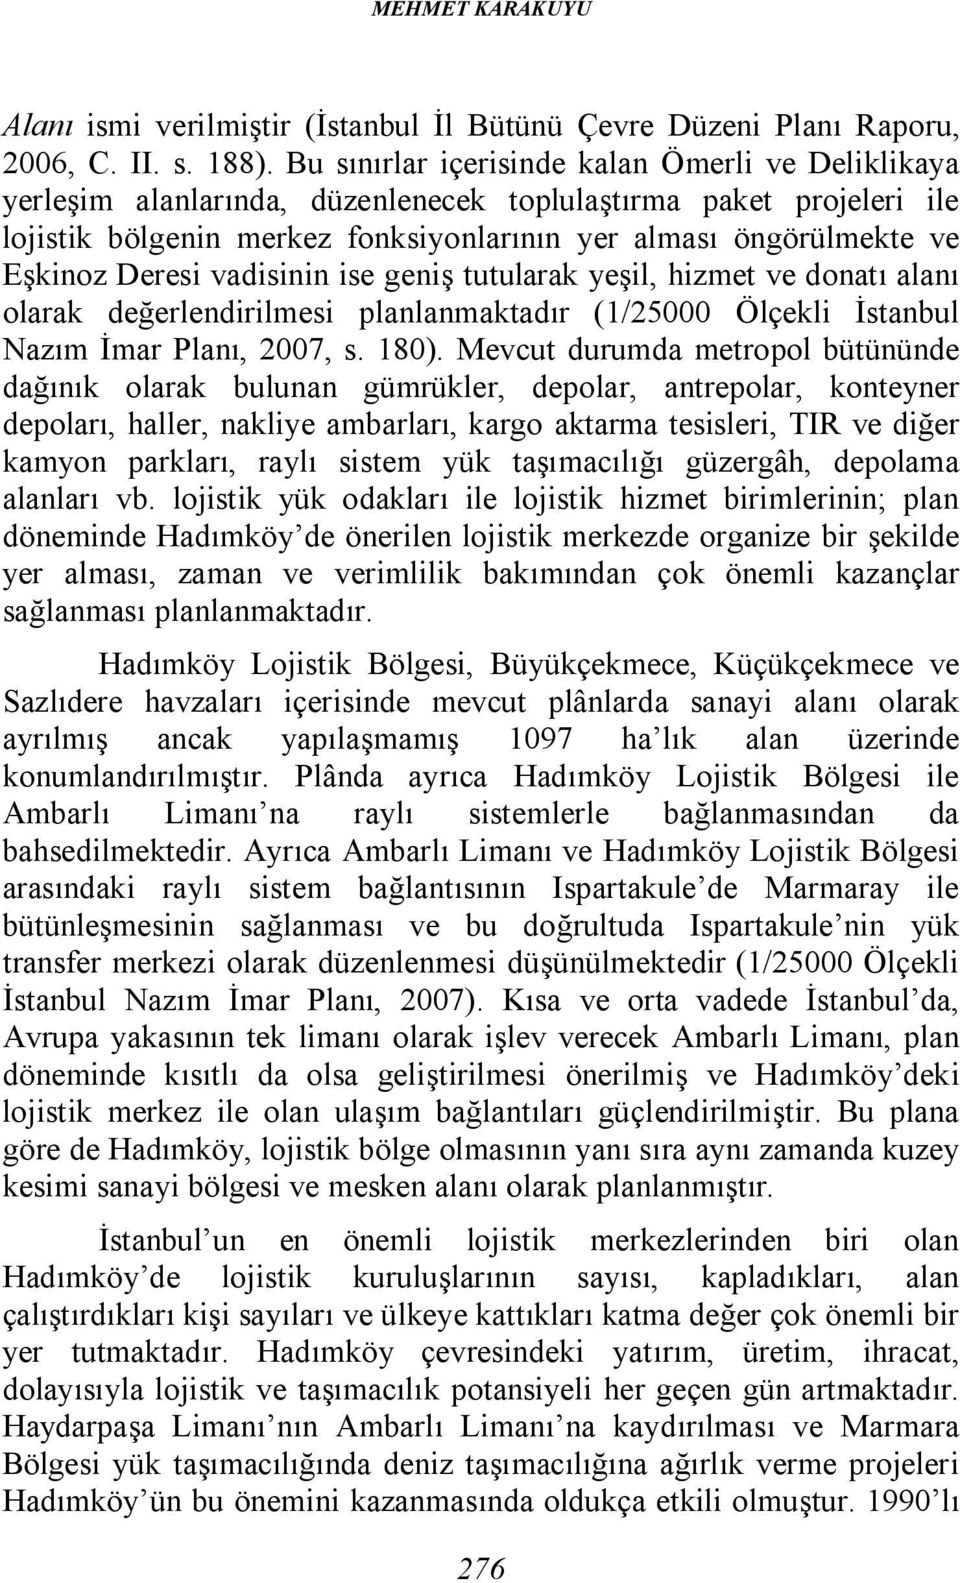 Deresi vadisinin ise geniş tutularak yeşil, hizmet ve donatı alanı olarak değerlendirilmesi planlanmaktadır (1/25000 Ölçekli İstanbul Nazım İmar Planı, 2007, s. 180).